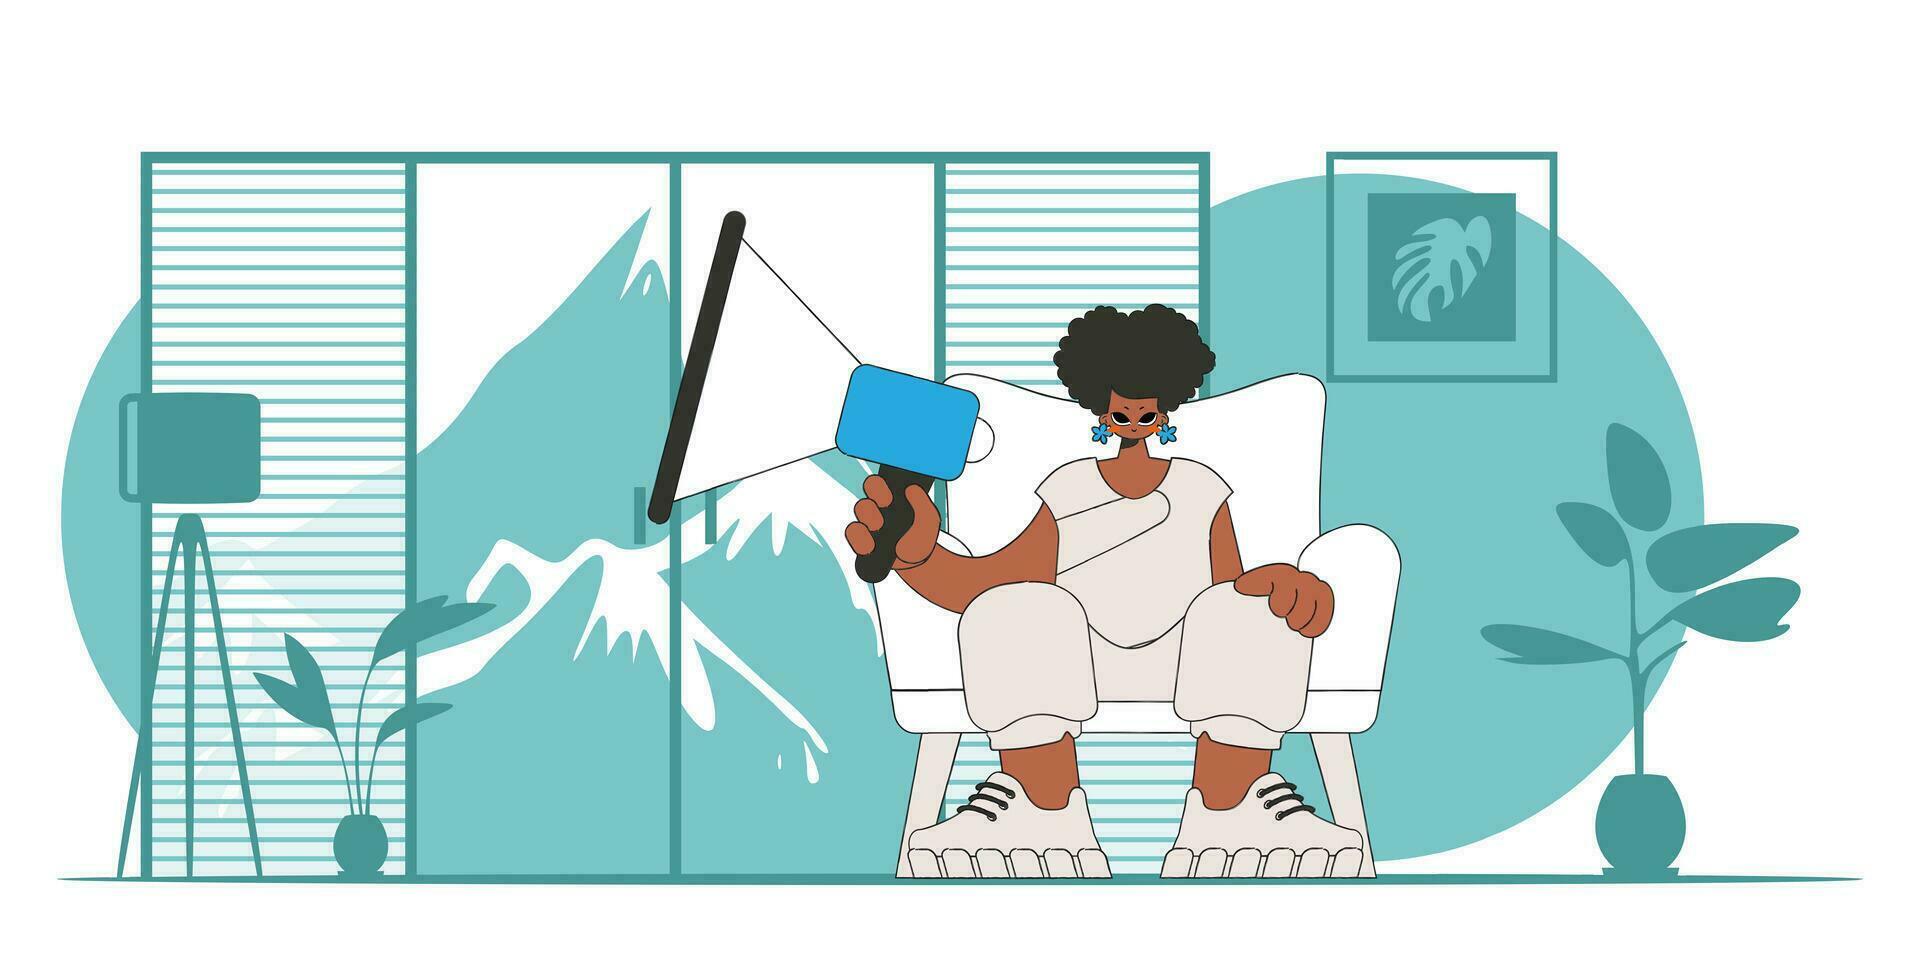 estilizado vector ilustración de un hora representante. un joven niña se sienta en un silla y sostiene un megáfono en su mano.